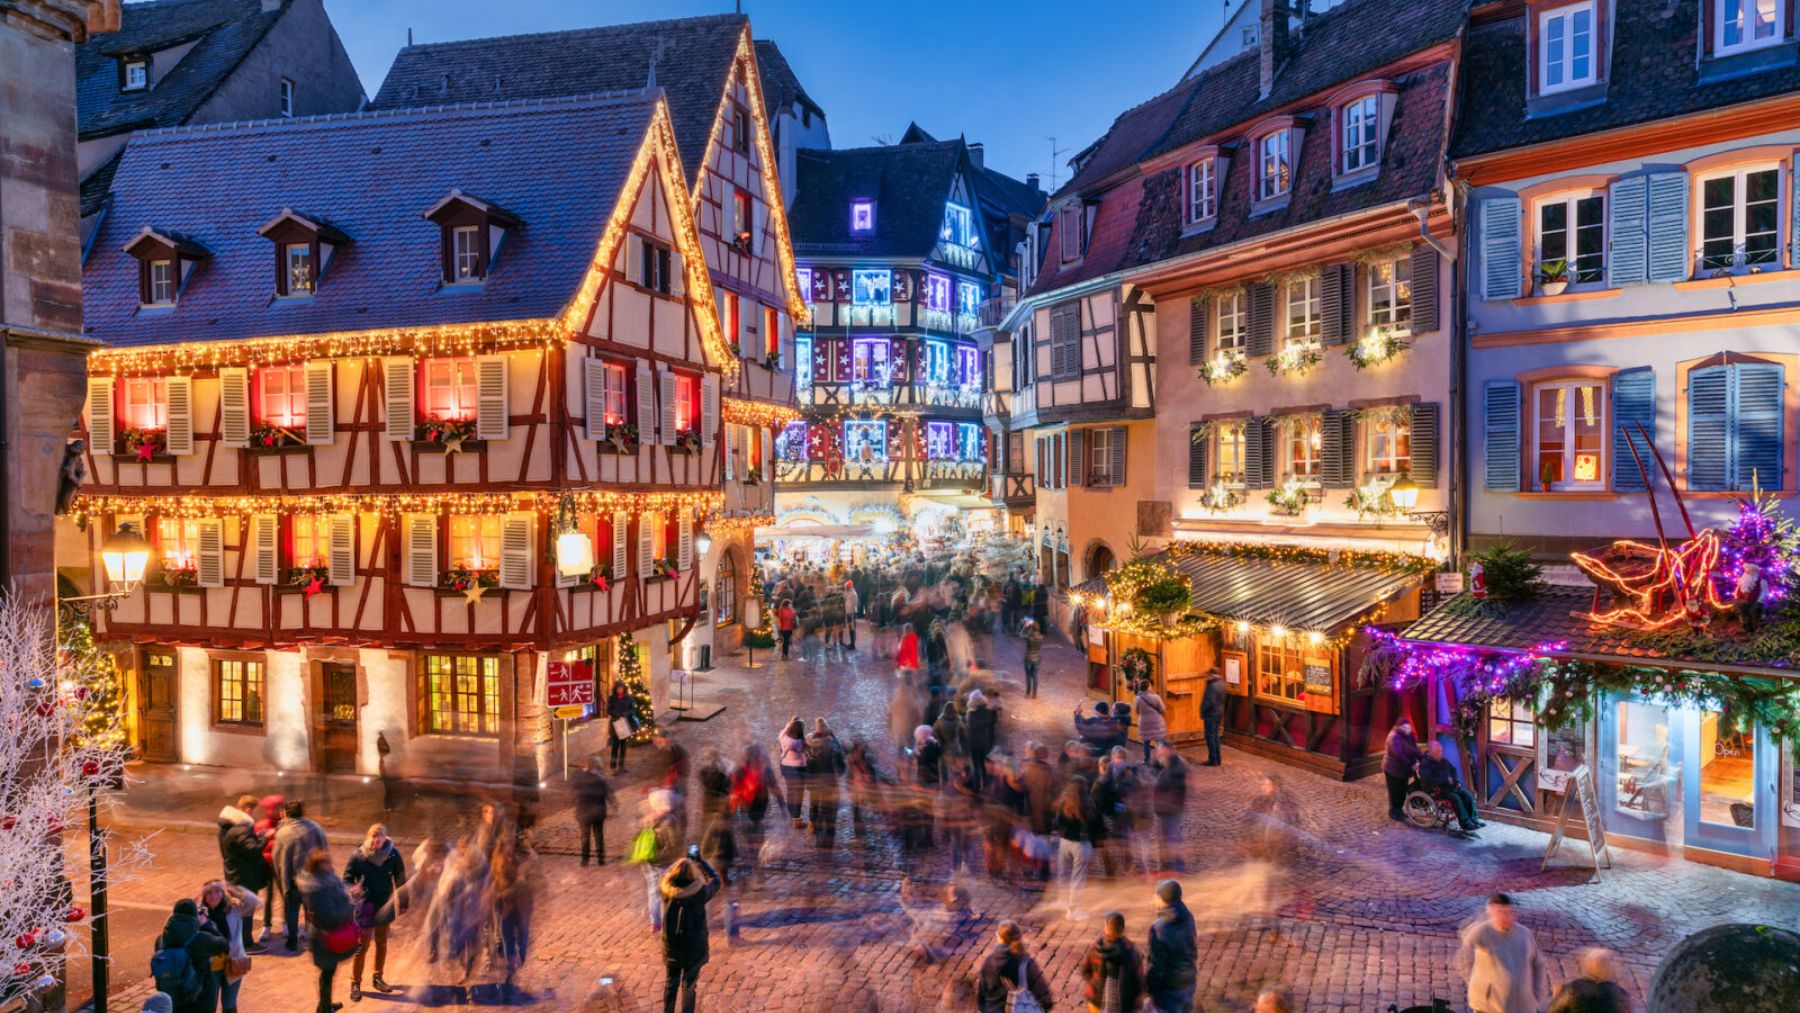 El pueblo de Colmar en la Alsacia, uno de los mejores para visitar esta época